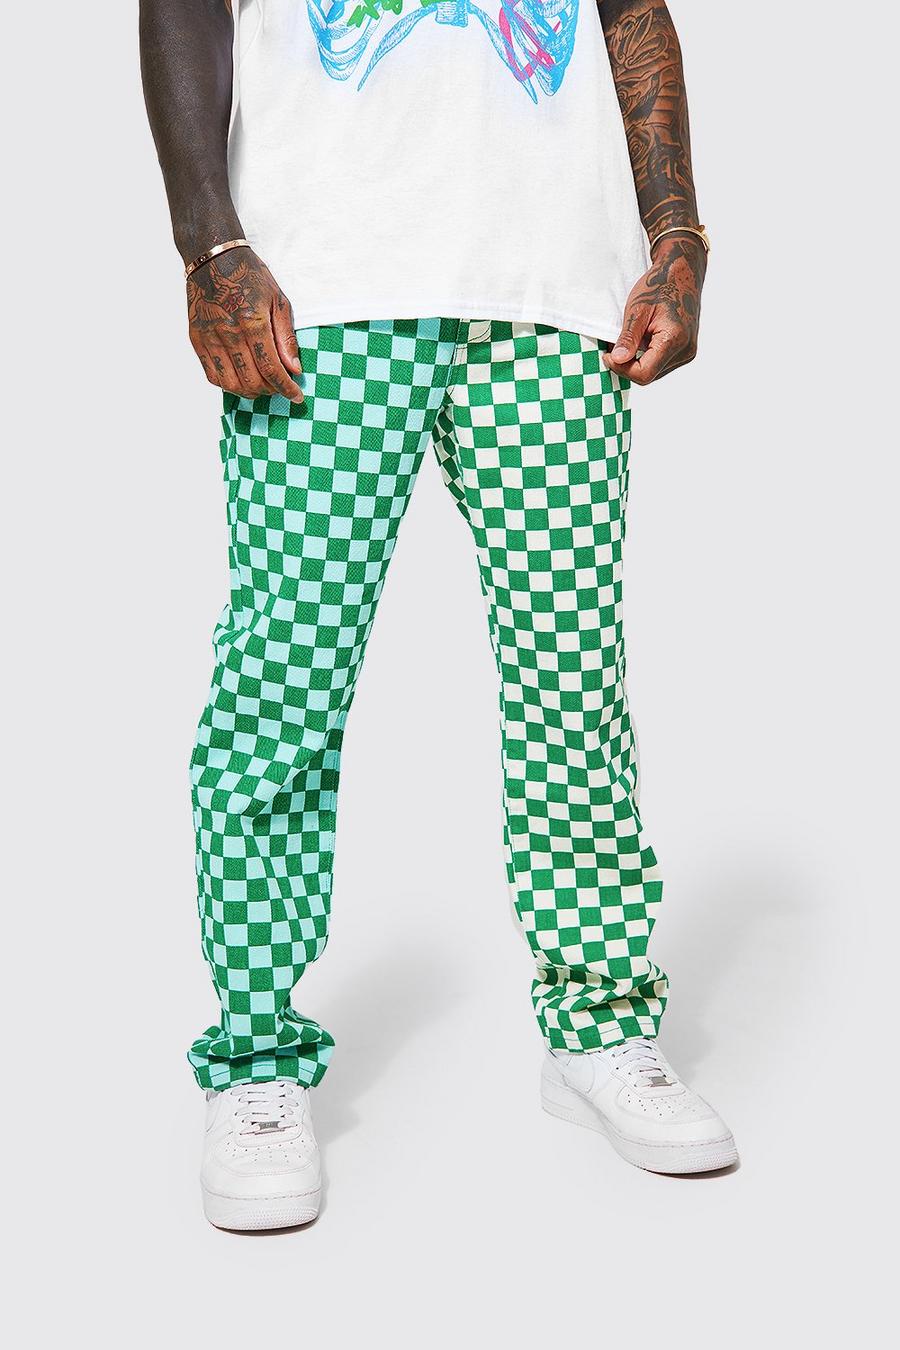 Lockere gespleißte Jeans mit Schachbrett-Print, Green vert